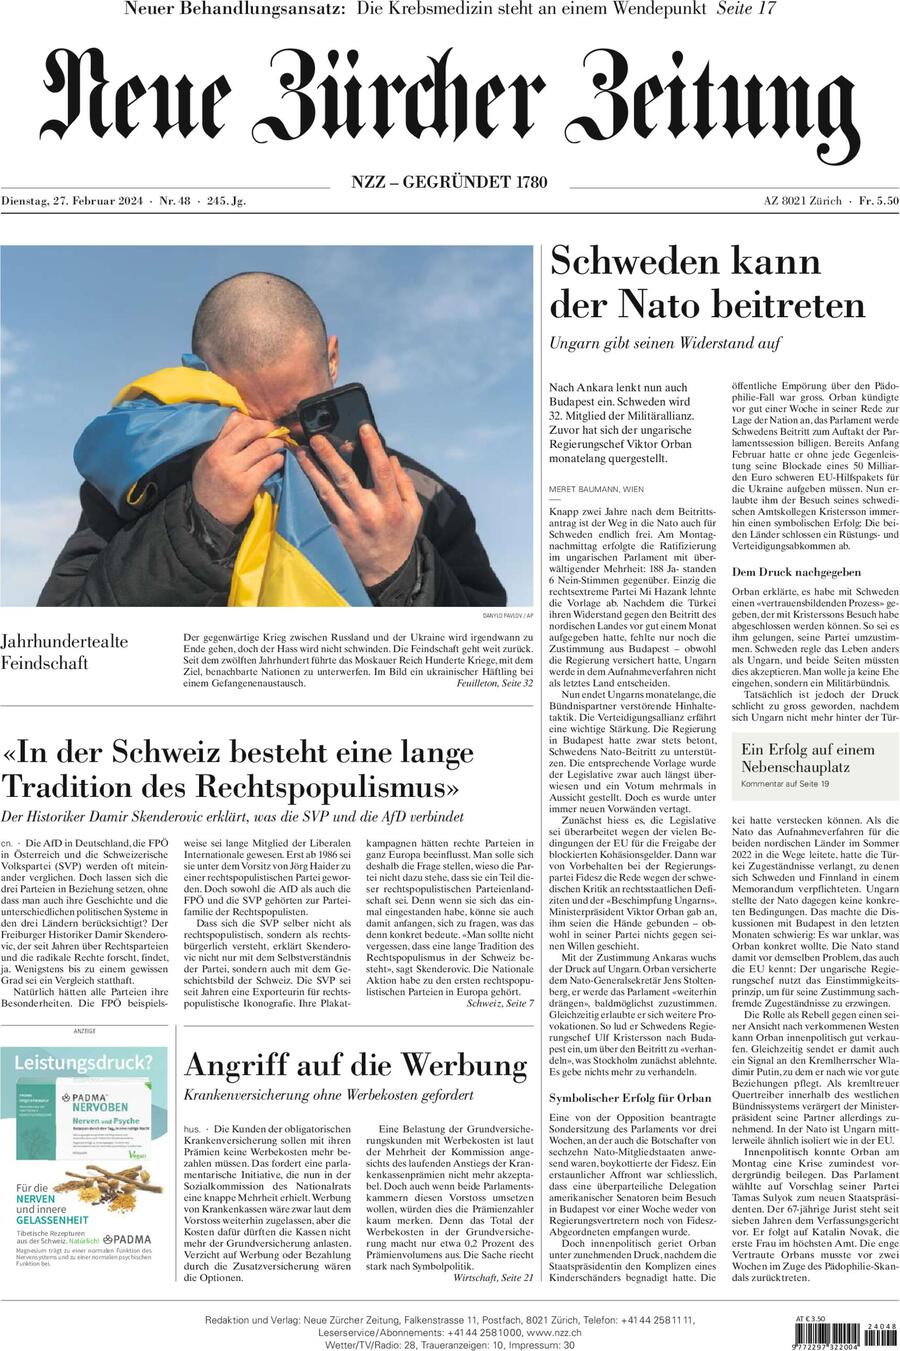 Neue Zürcher Zeitung - Front Page - 27/02/2024